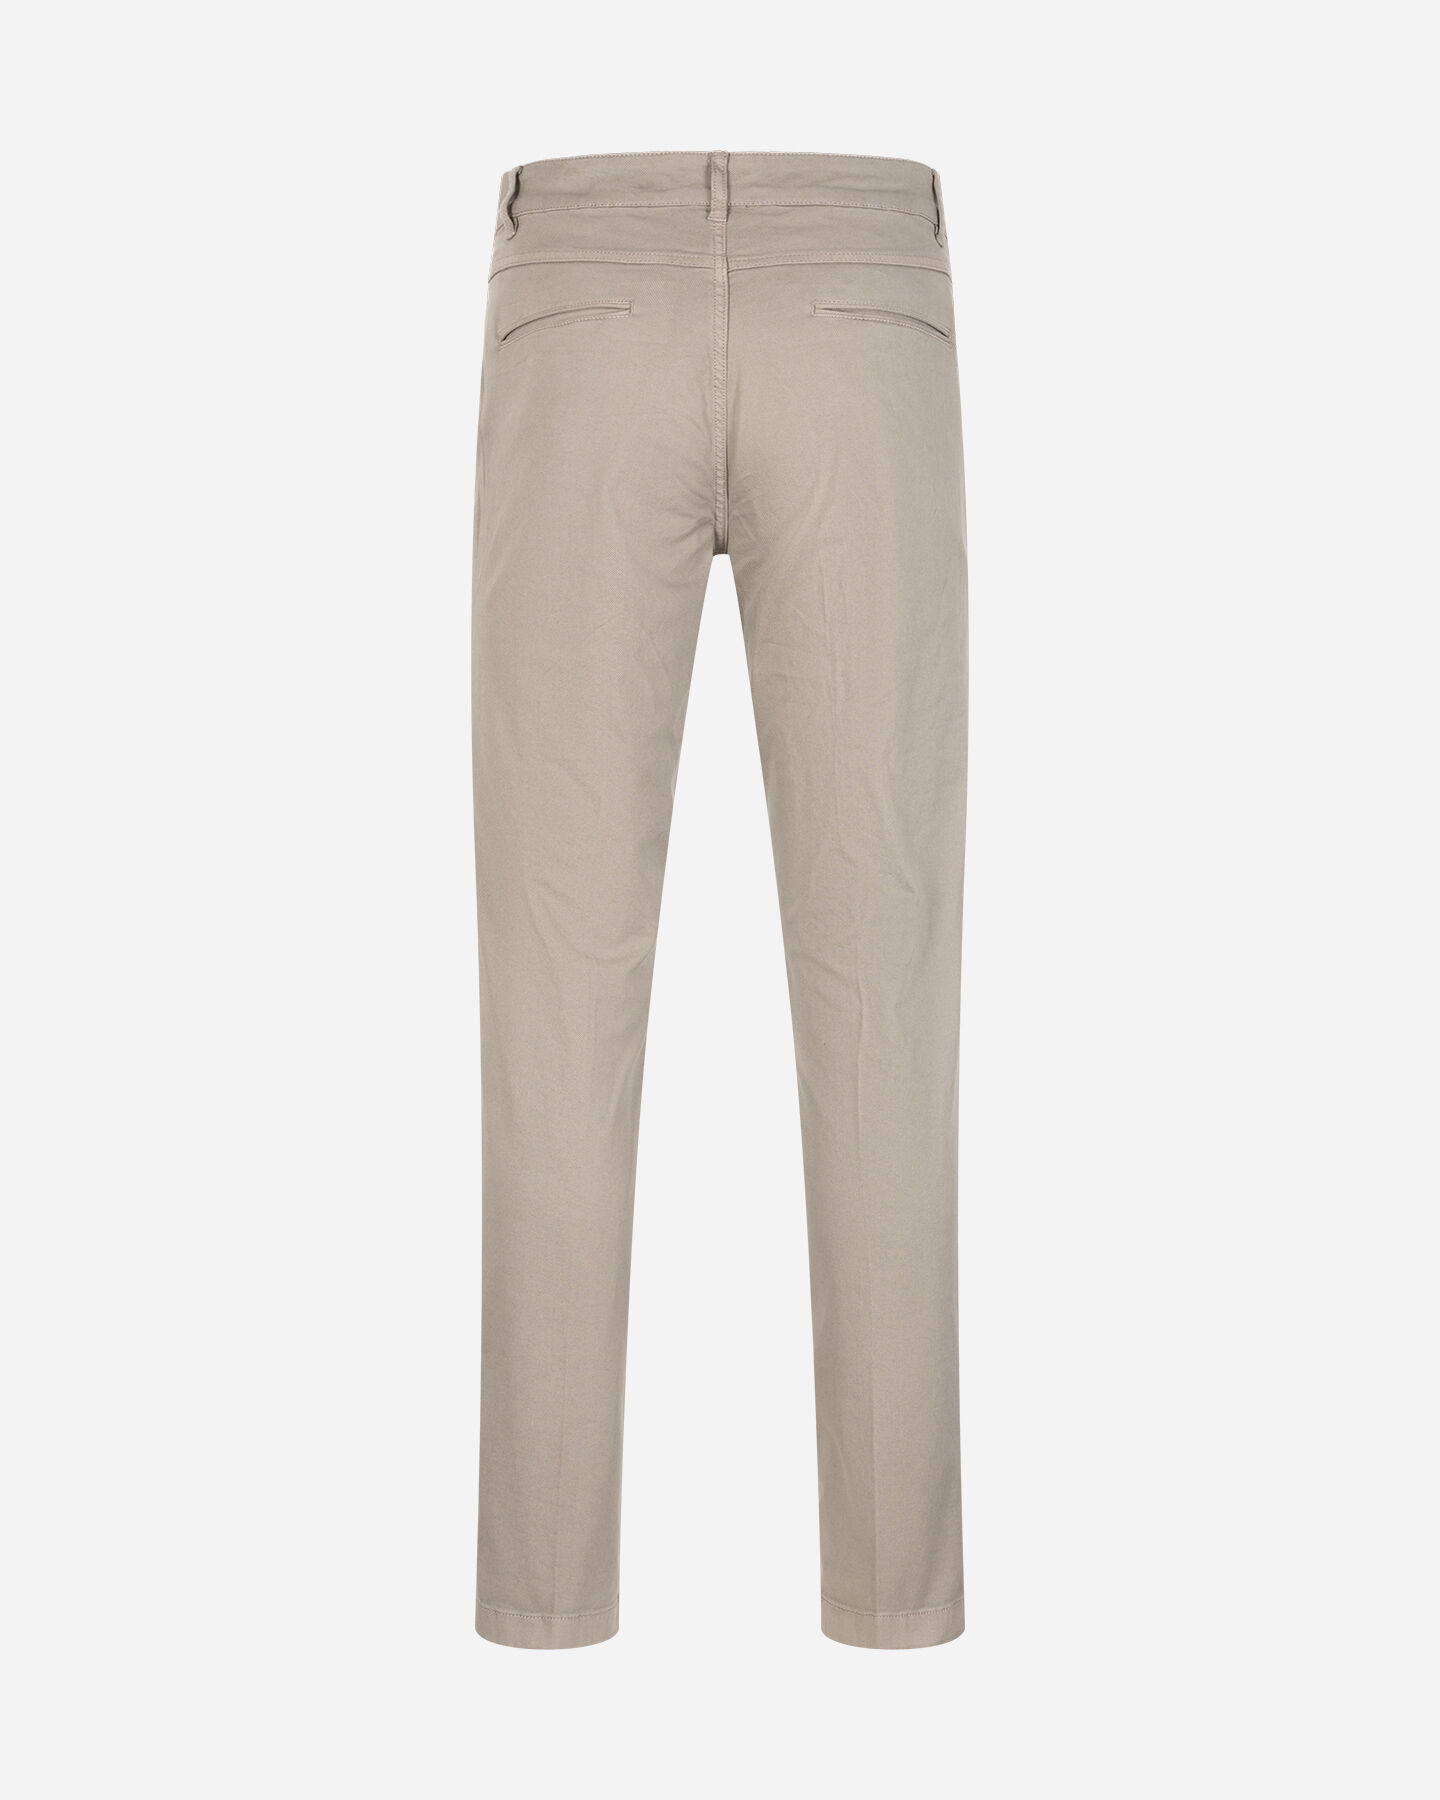  Pantalone BEST COMPANY COTTON LINE M S4131673|011|46 scatto 1